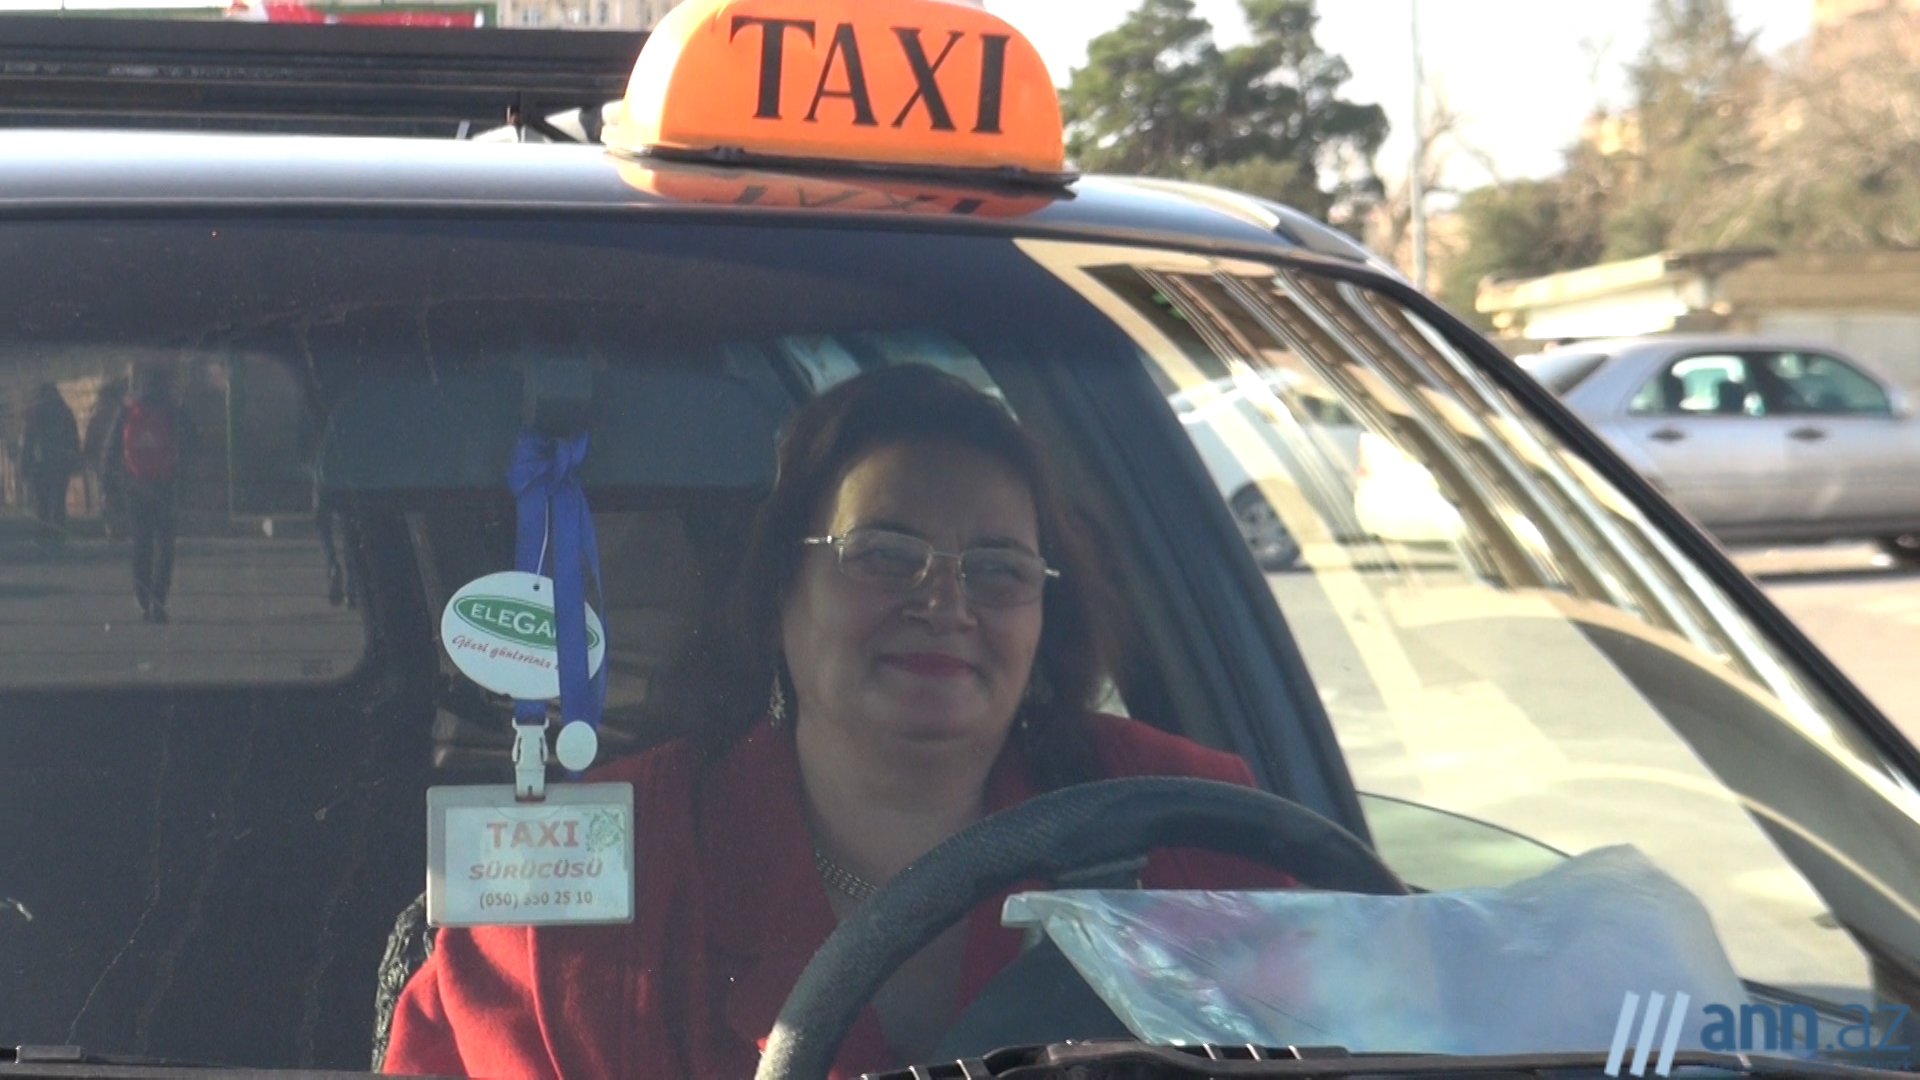 СУДЬБЫ: Женщина-таксист с 28-летним стажем